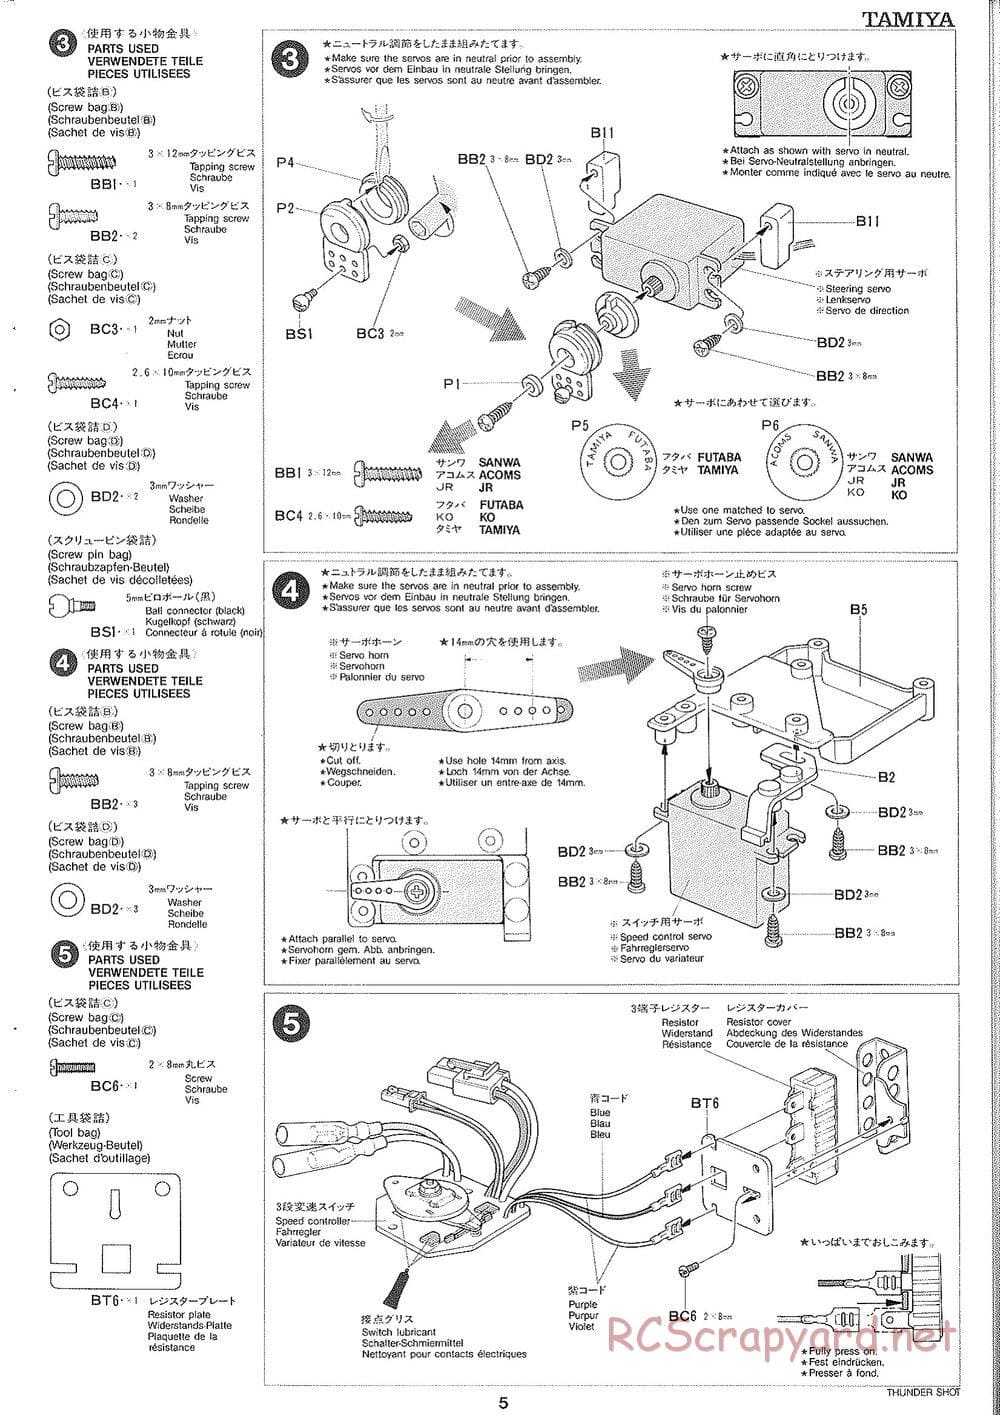 Tamiya - Thunder Shot - TS1 Chassis - Manual - Page 6